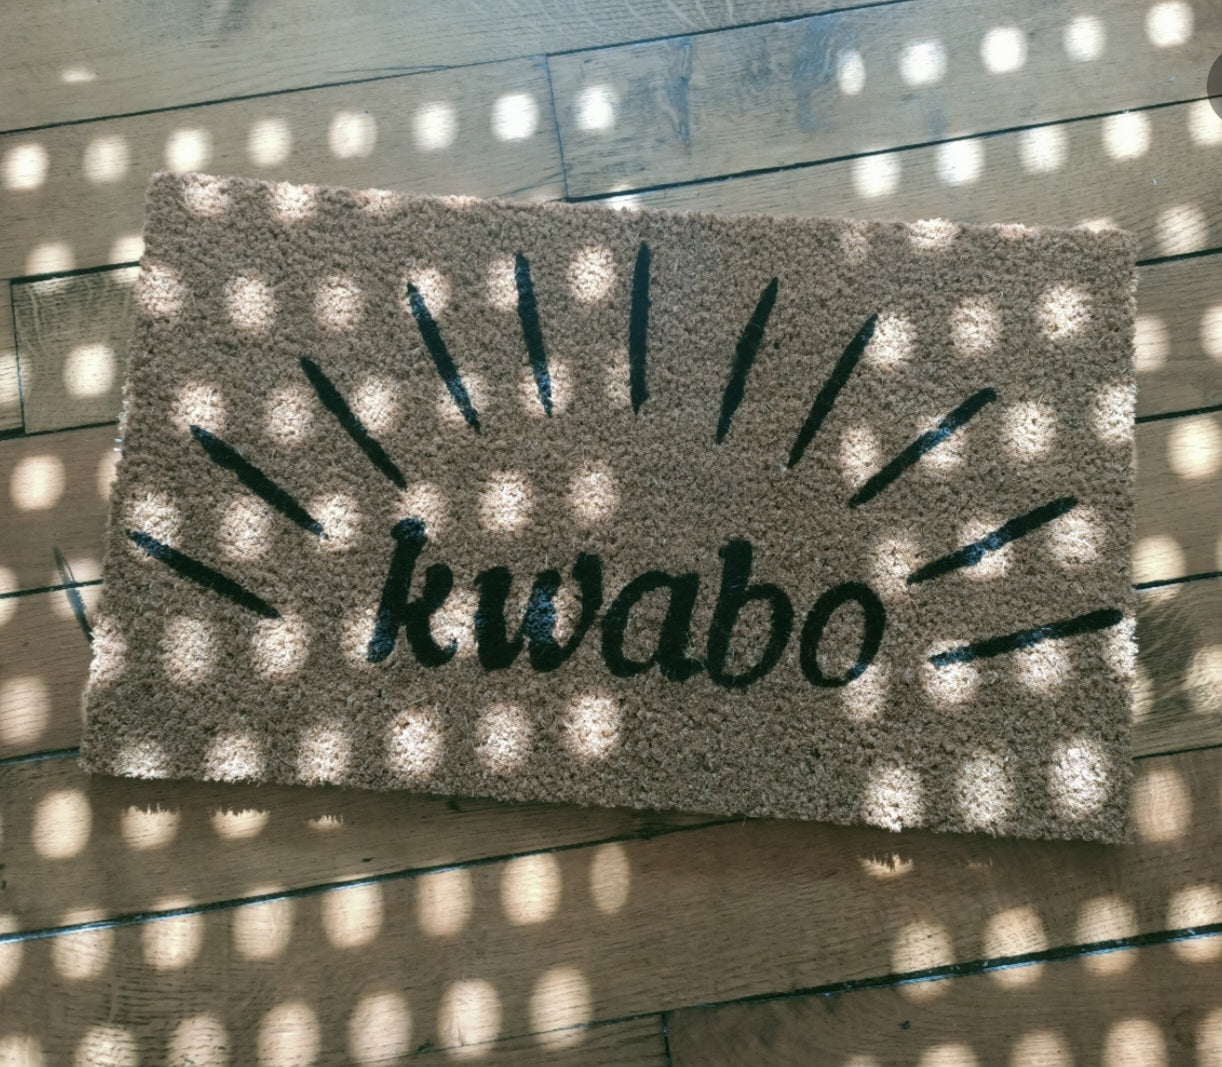 "Kwabo" door mat- "Welcome" in Fongbe